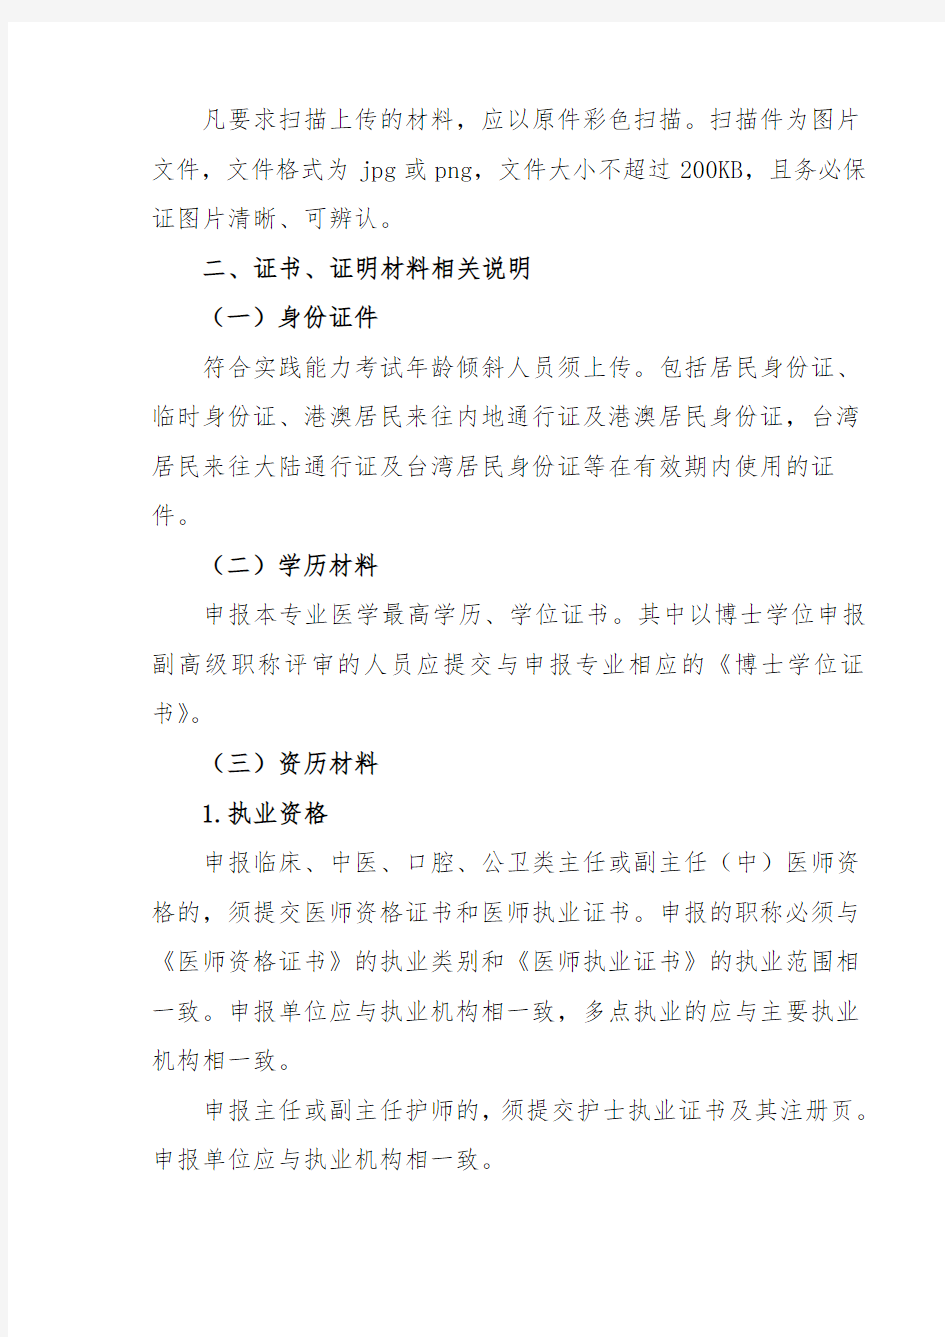 广州市卫生系列高级职称评审申报人员须知